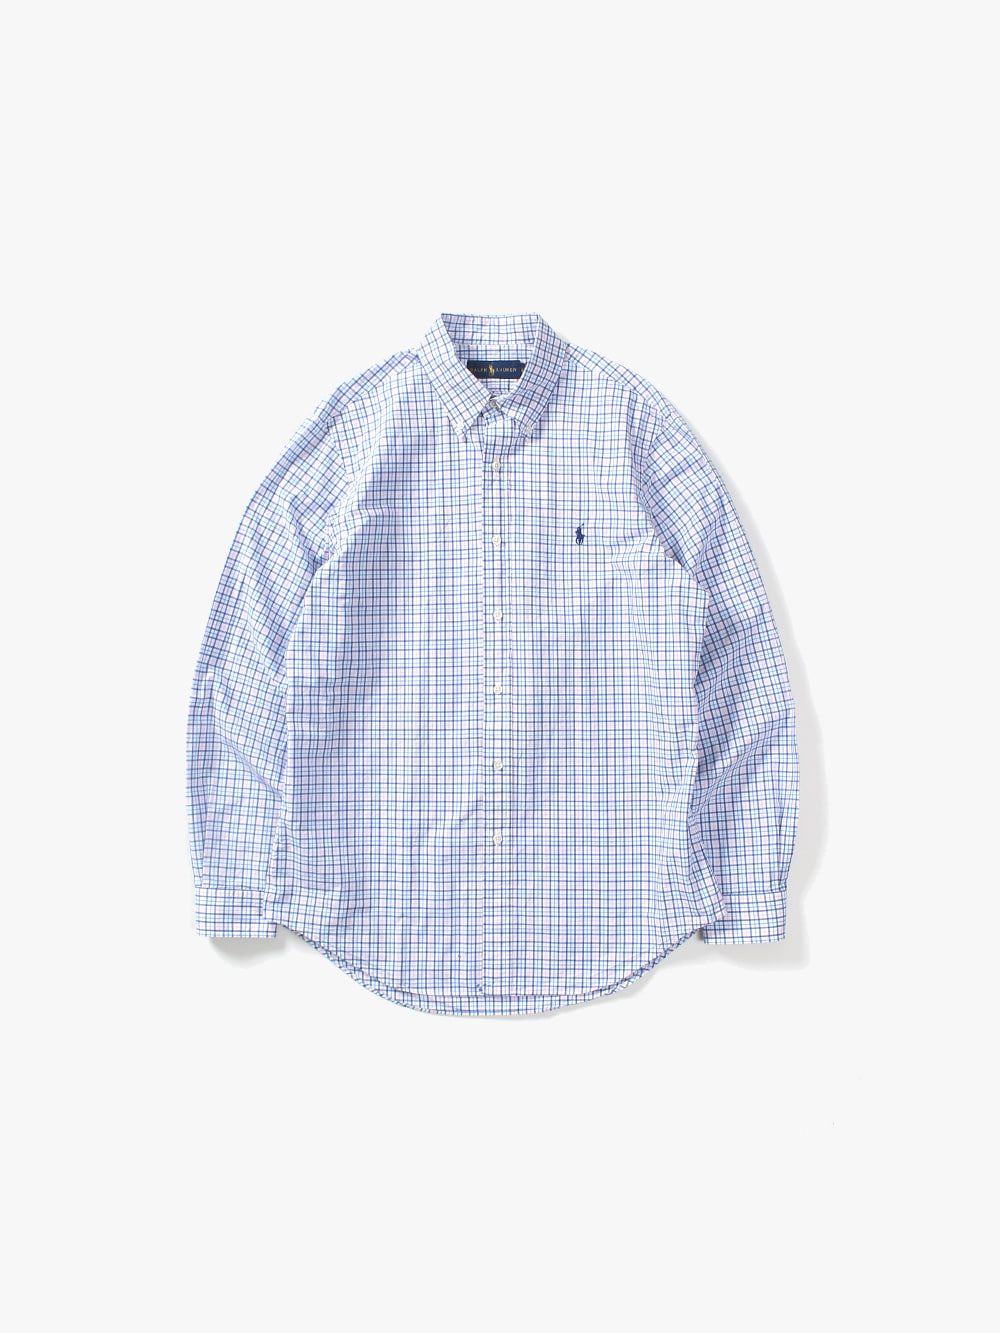 [ M ] Polo Ralph Lauren Shirt (6178)